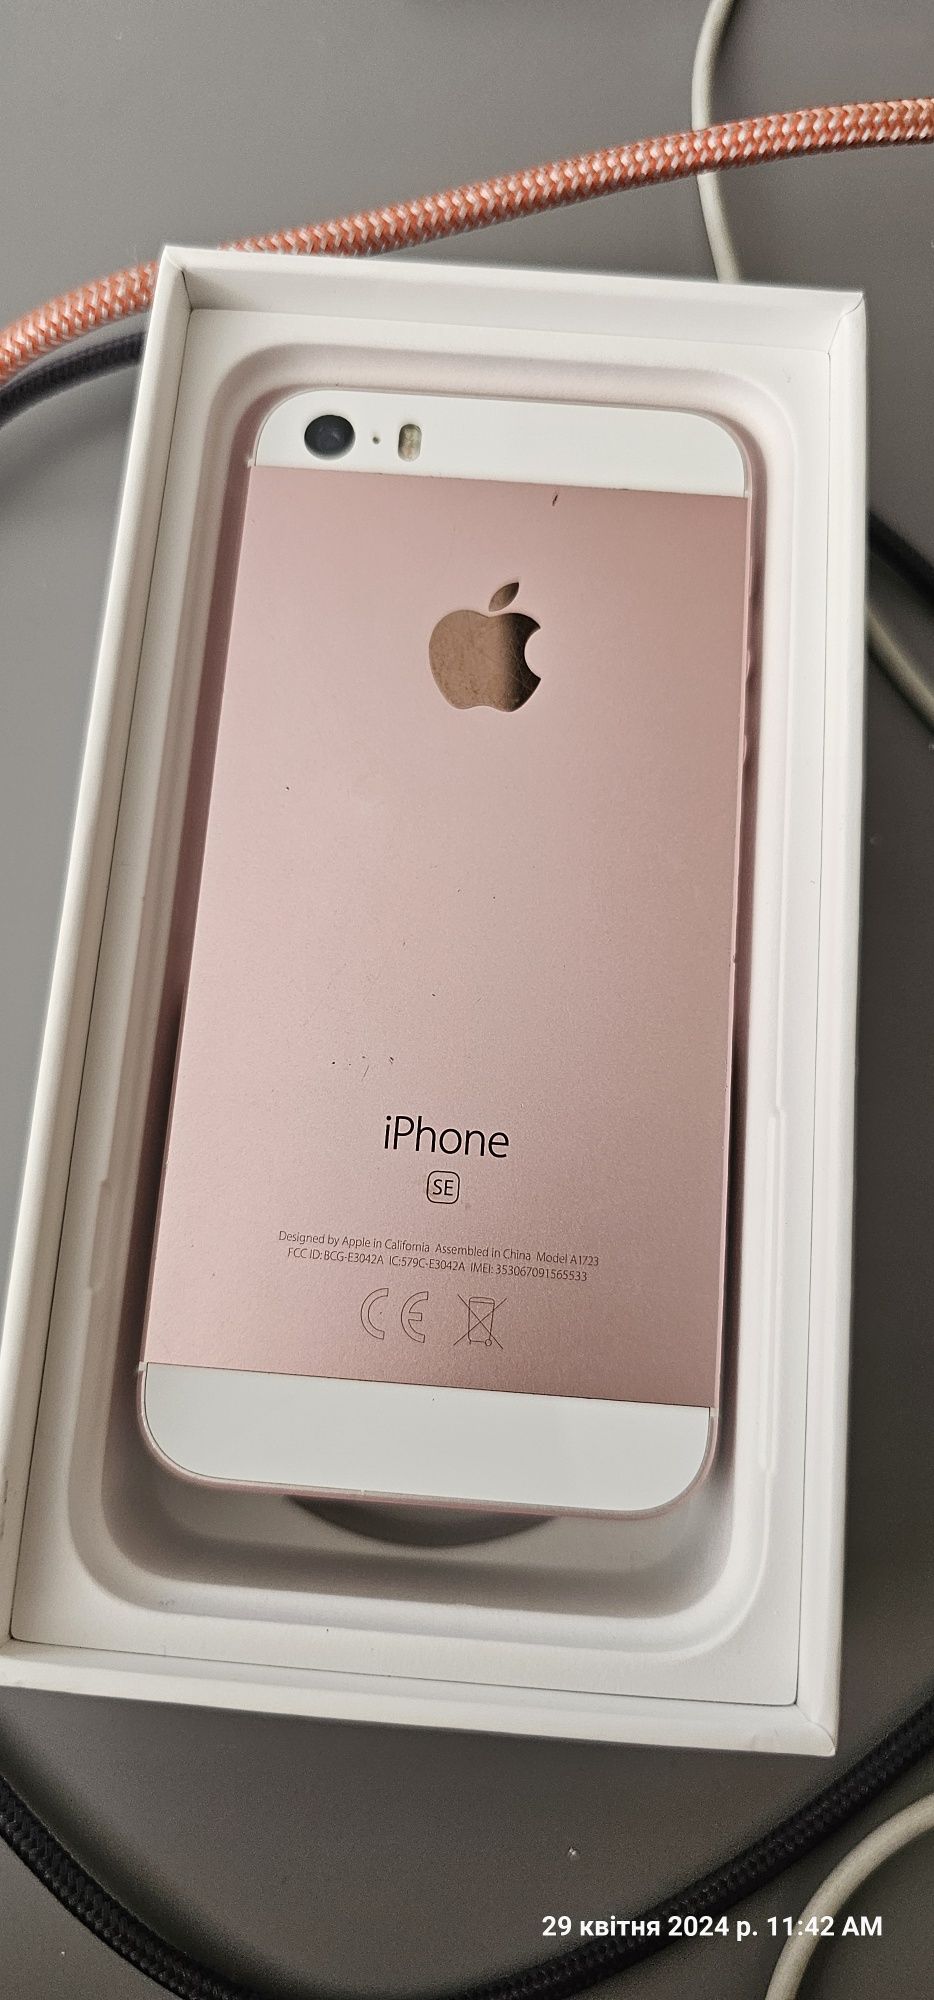 iPhone SE, 32 GB, roz gold 
Stare perfecta de functionare. 
Are o bate